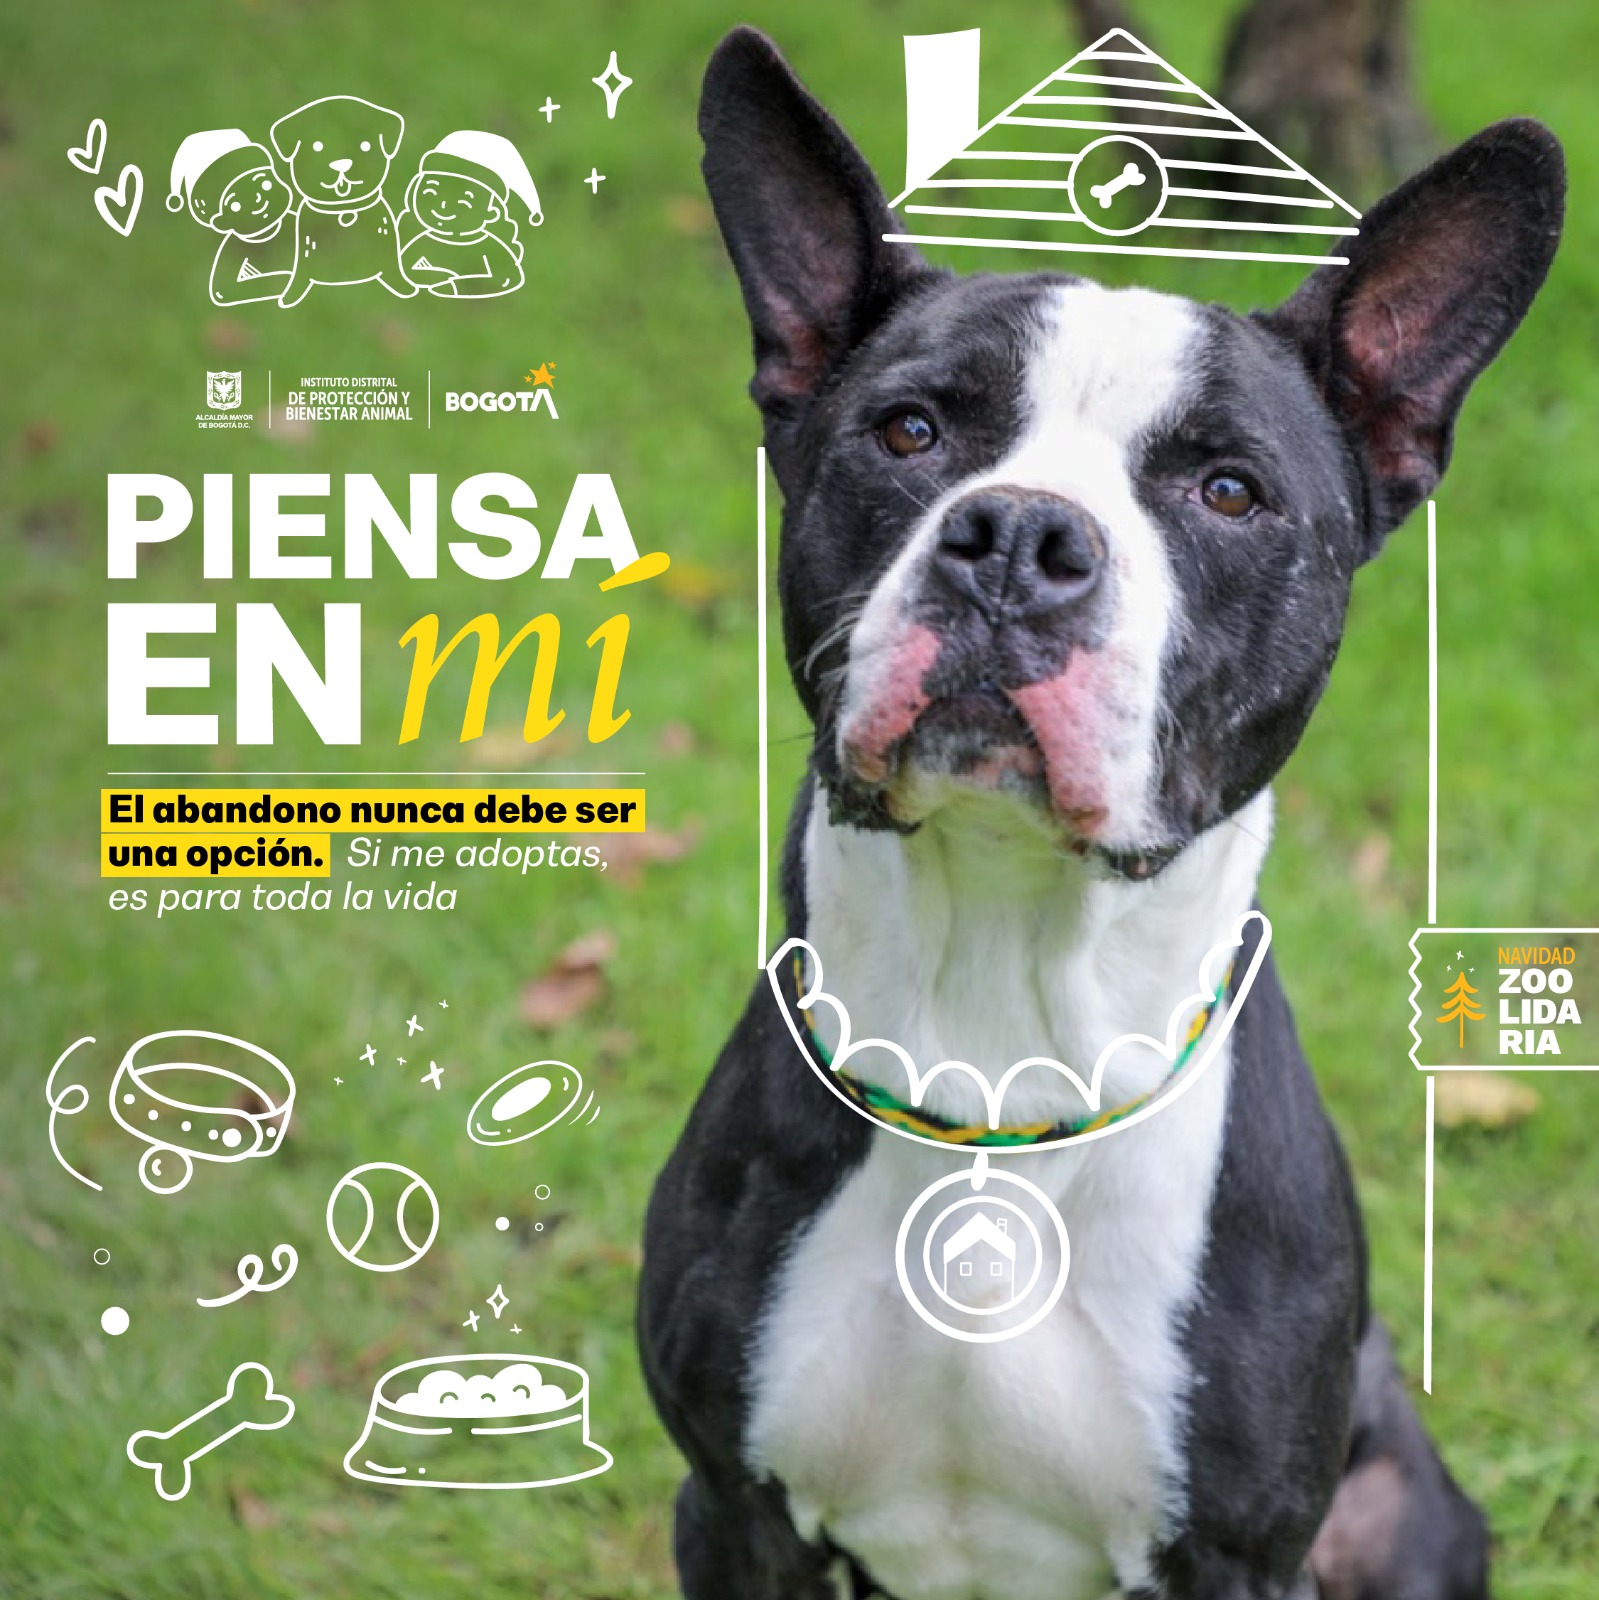 Distrito de Bogotá invita a la ciudadanía a vivir las festividades de manera responsable con los animales